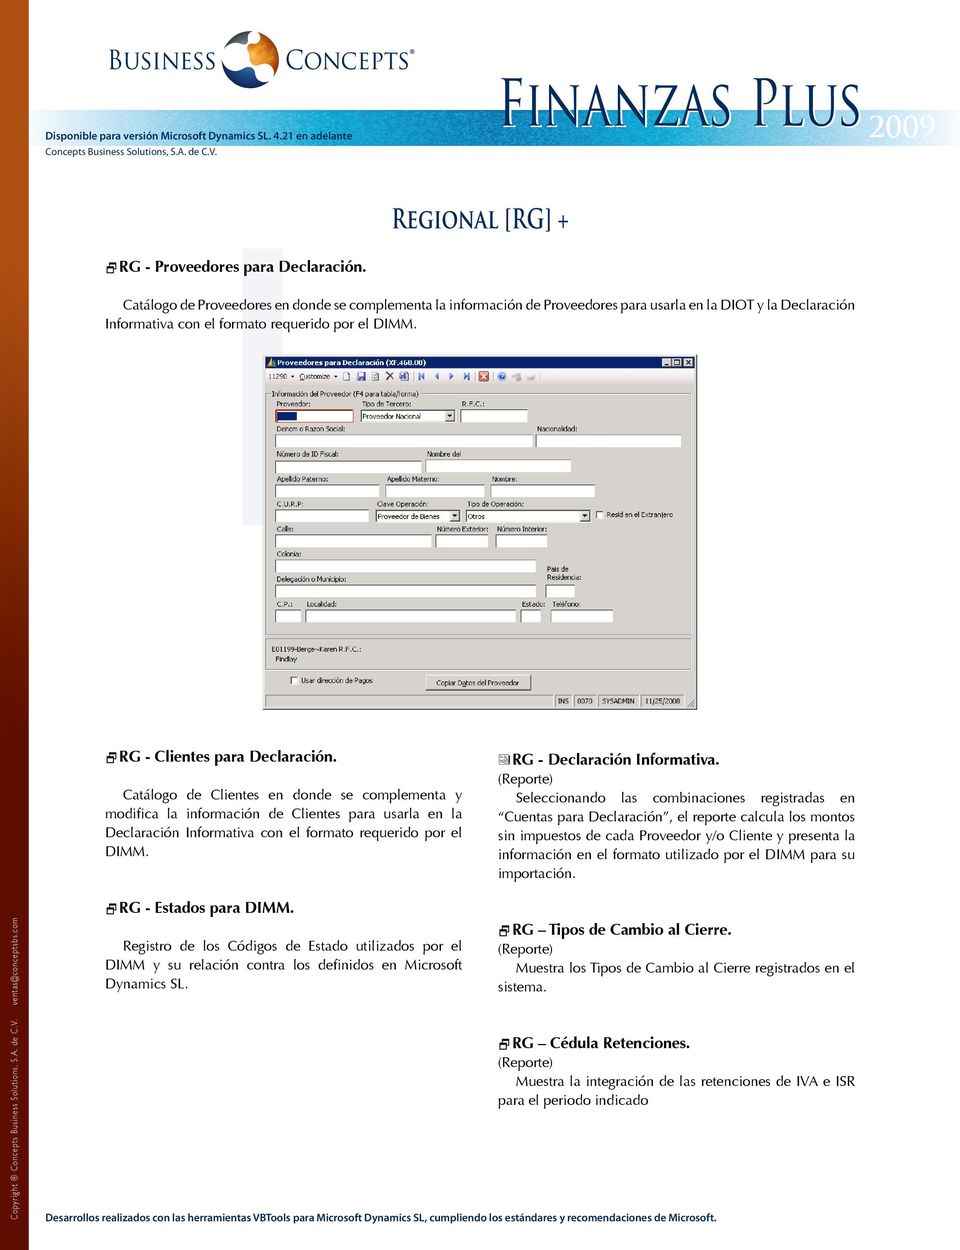 Catálogo de Clientes en donde se complementa y modifica la información de Clientes para usarla en la Declaración Informativa con el formato requerido por el DIMM. ªRG - Declaración Informativa.